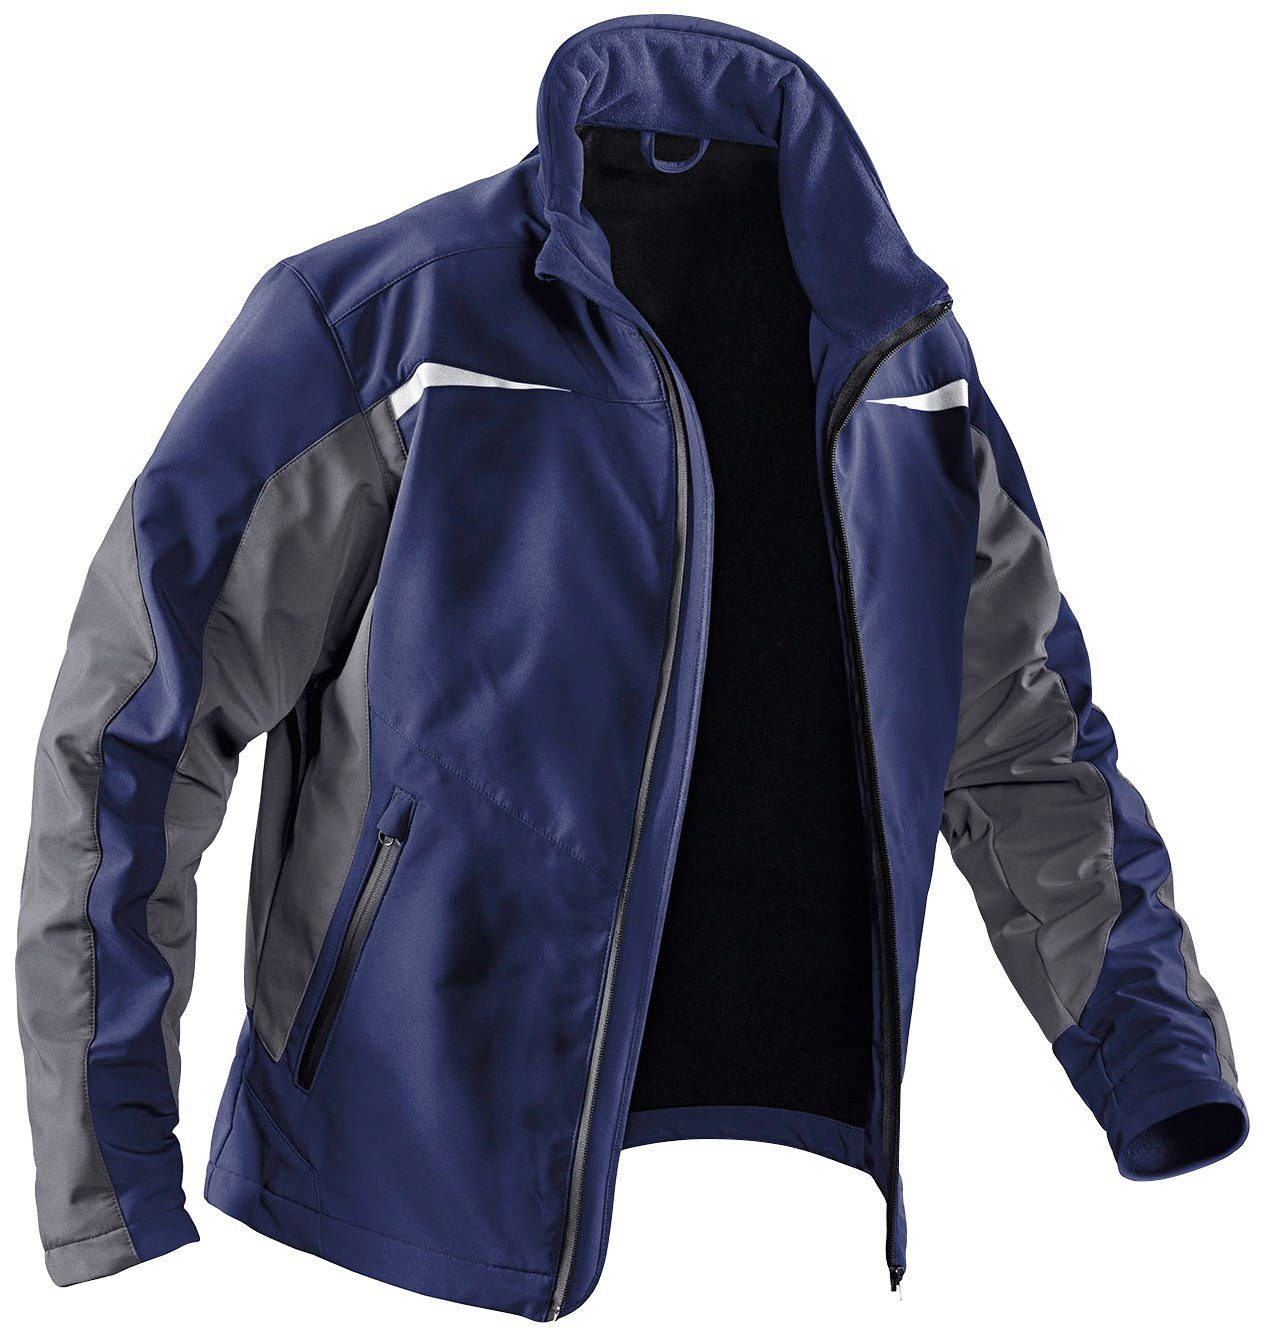 Kübler Arbeitsjacke Softshell Jacke mit 4 Taschen, winddicht, wasserabweisend dunkelblau-anthrazit